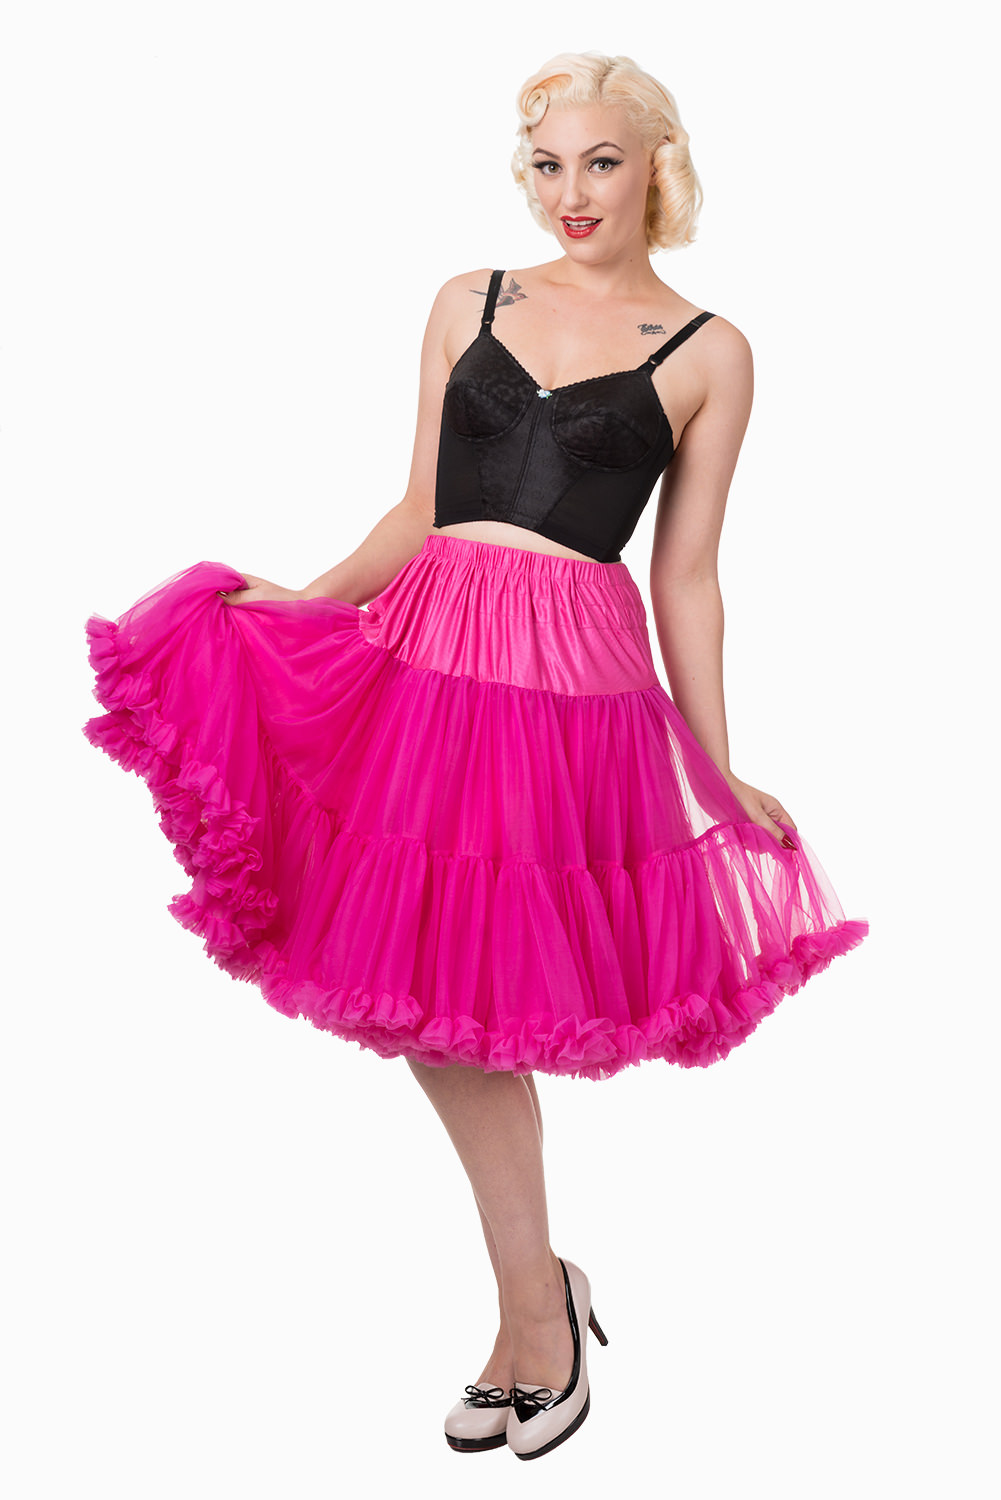 Banned Retro 50s Starlite Hot Pink Petticoat